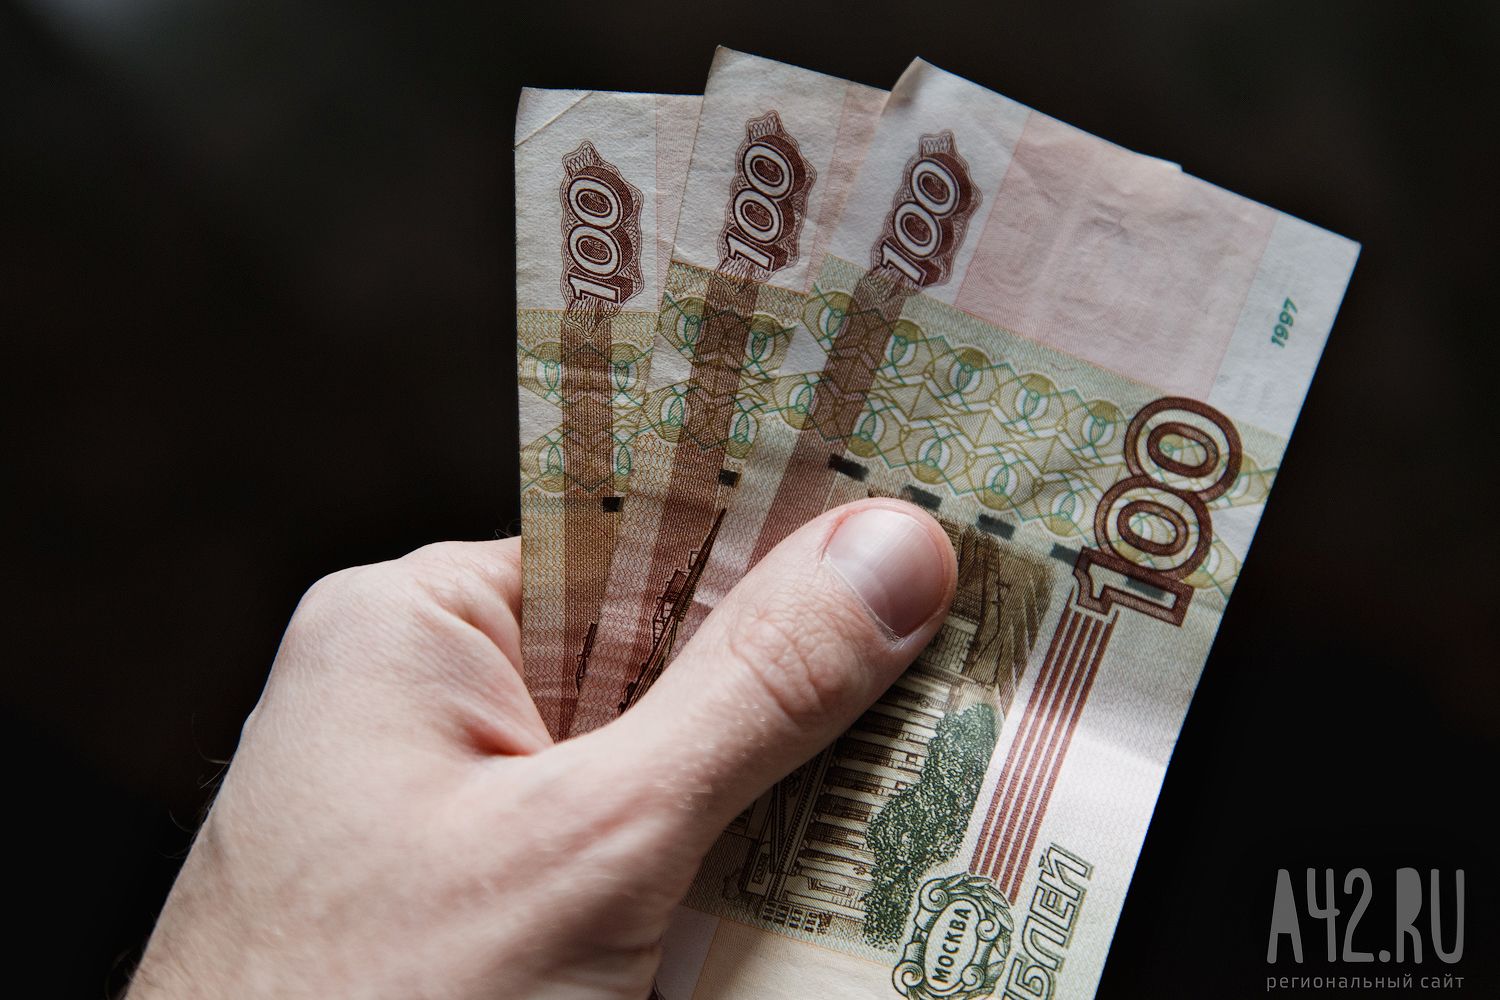 20 тысяч рублей назвали порогом бедности большинство россиян